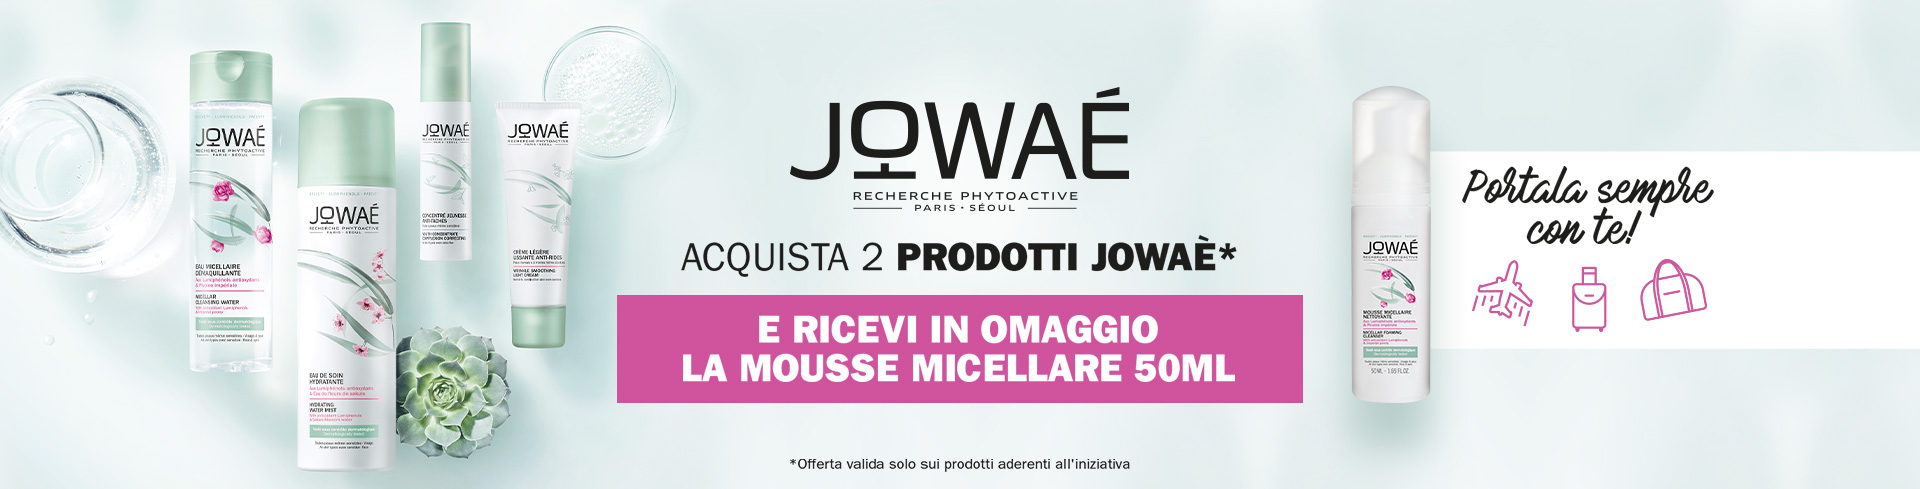 jowae banner promo mousse micellare